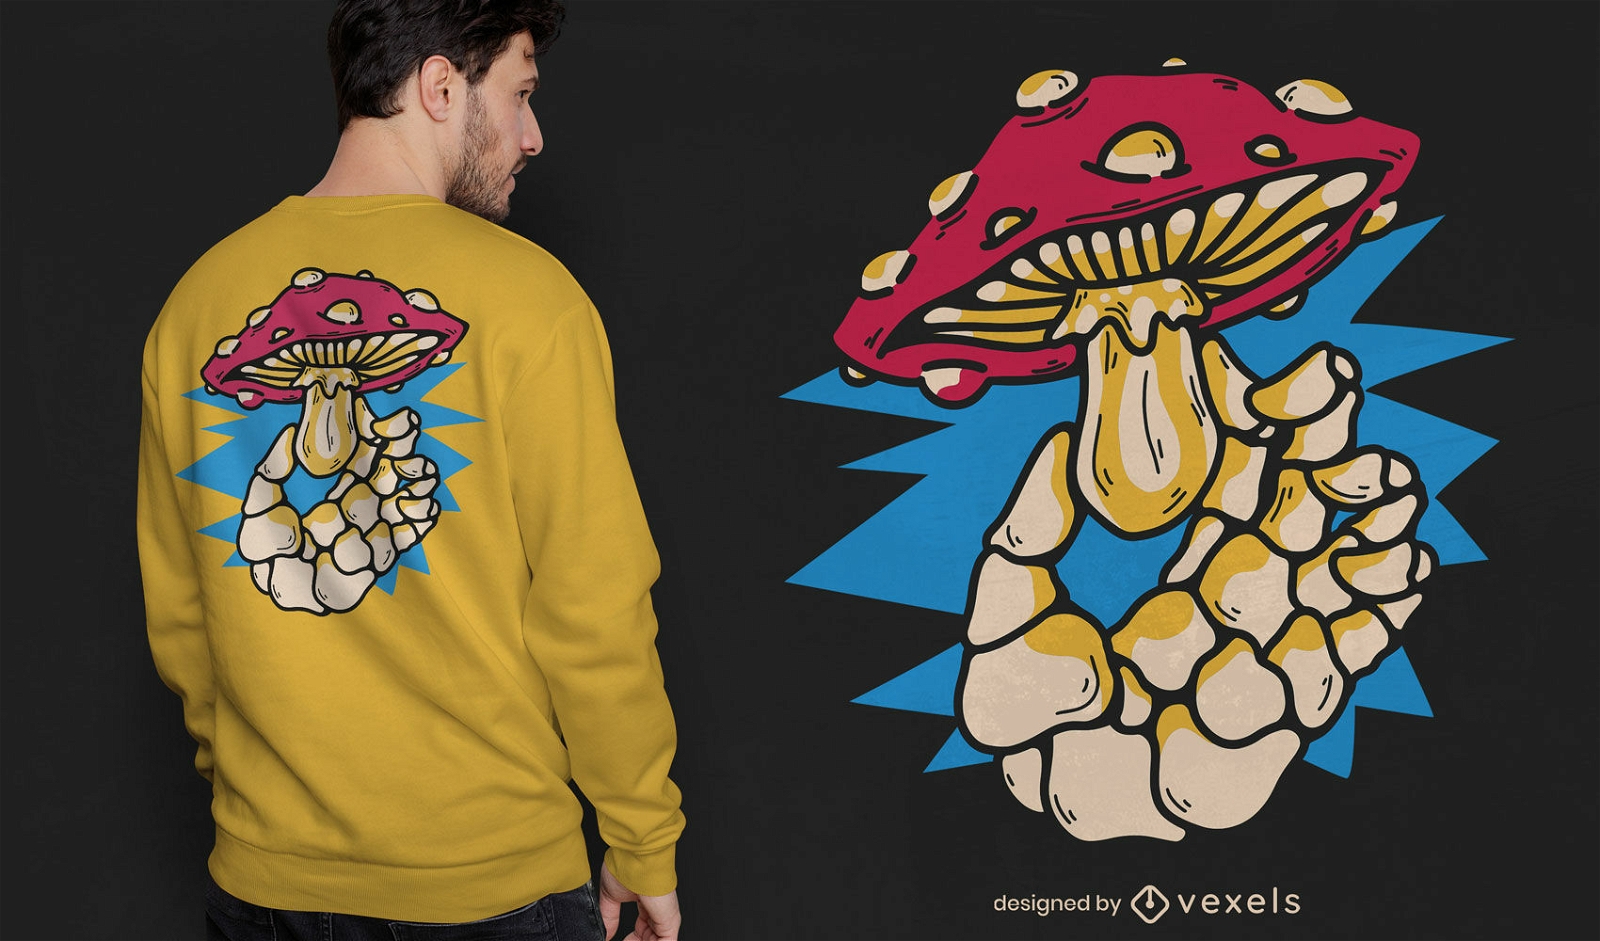 Skeleton hand holding mushroom t-shirt design